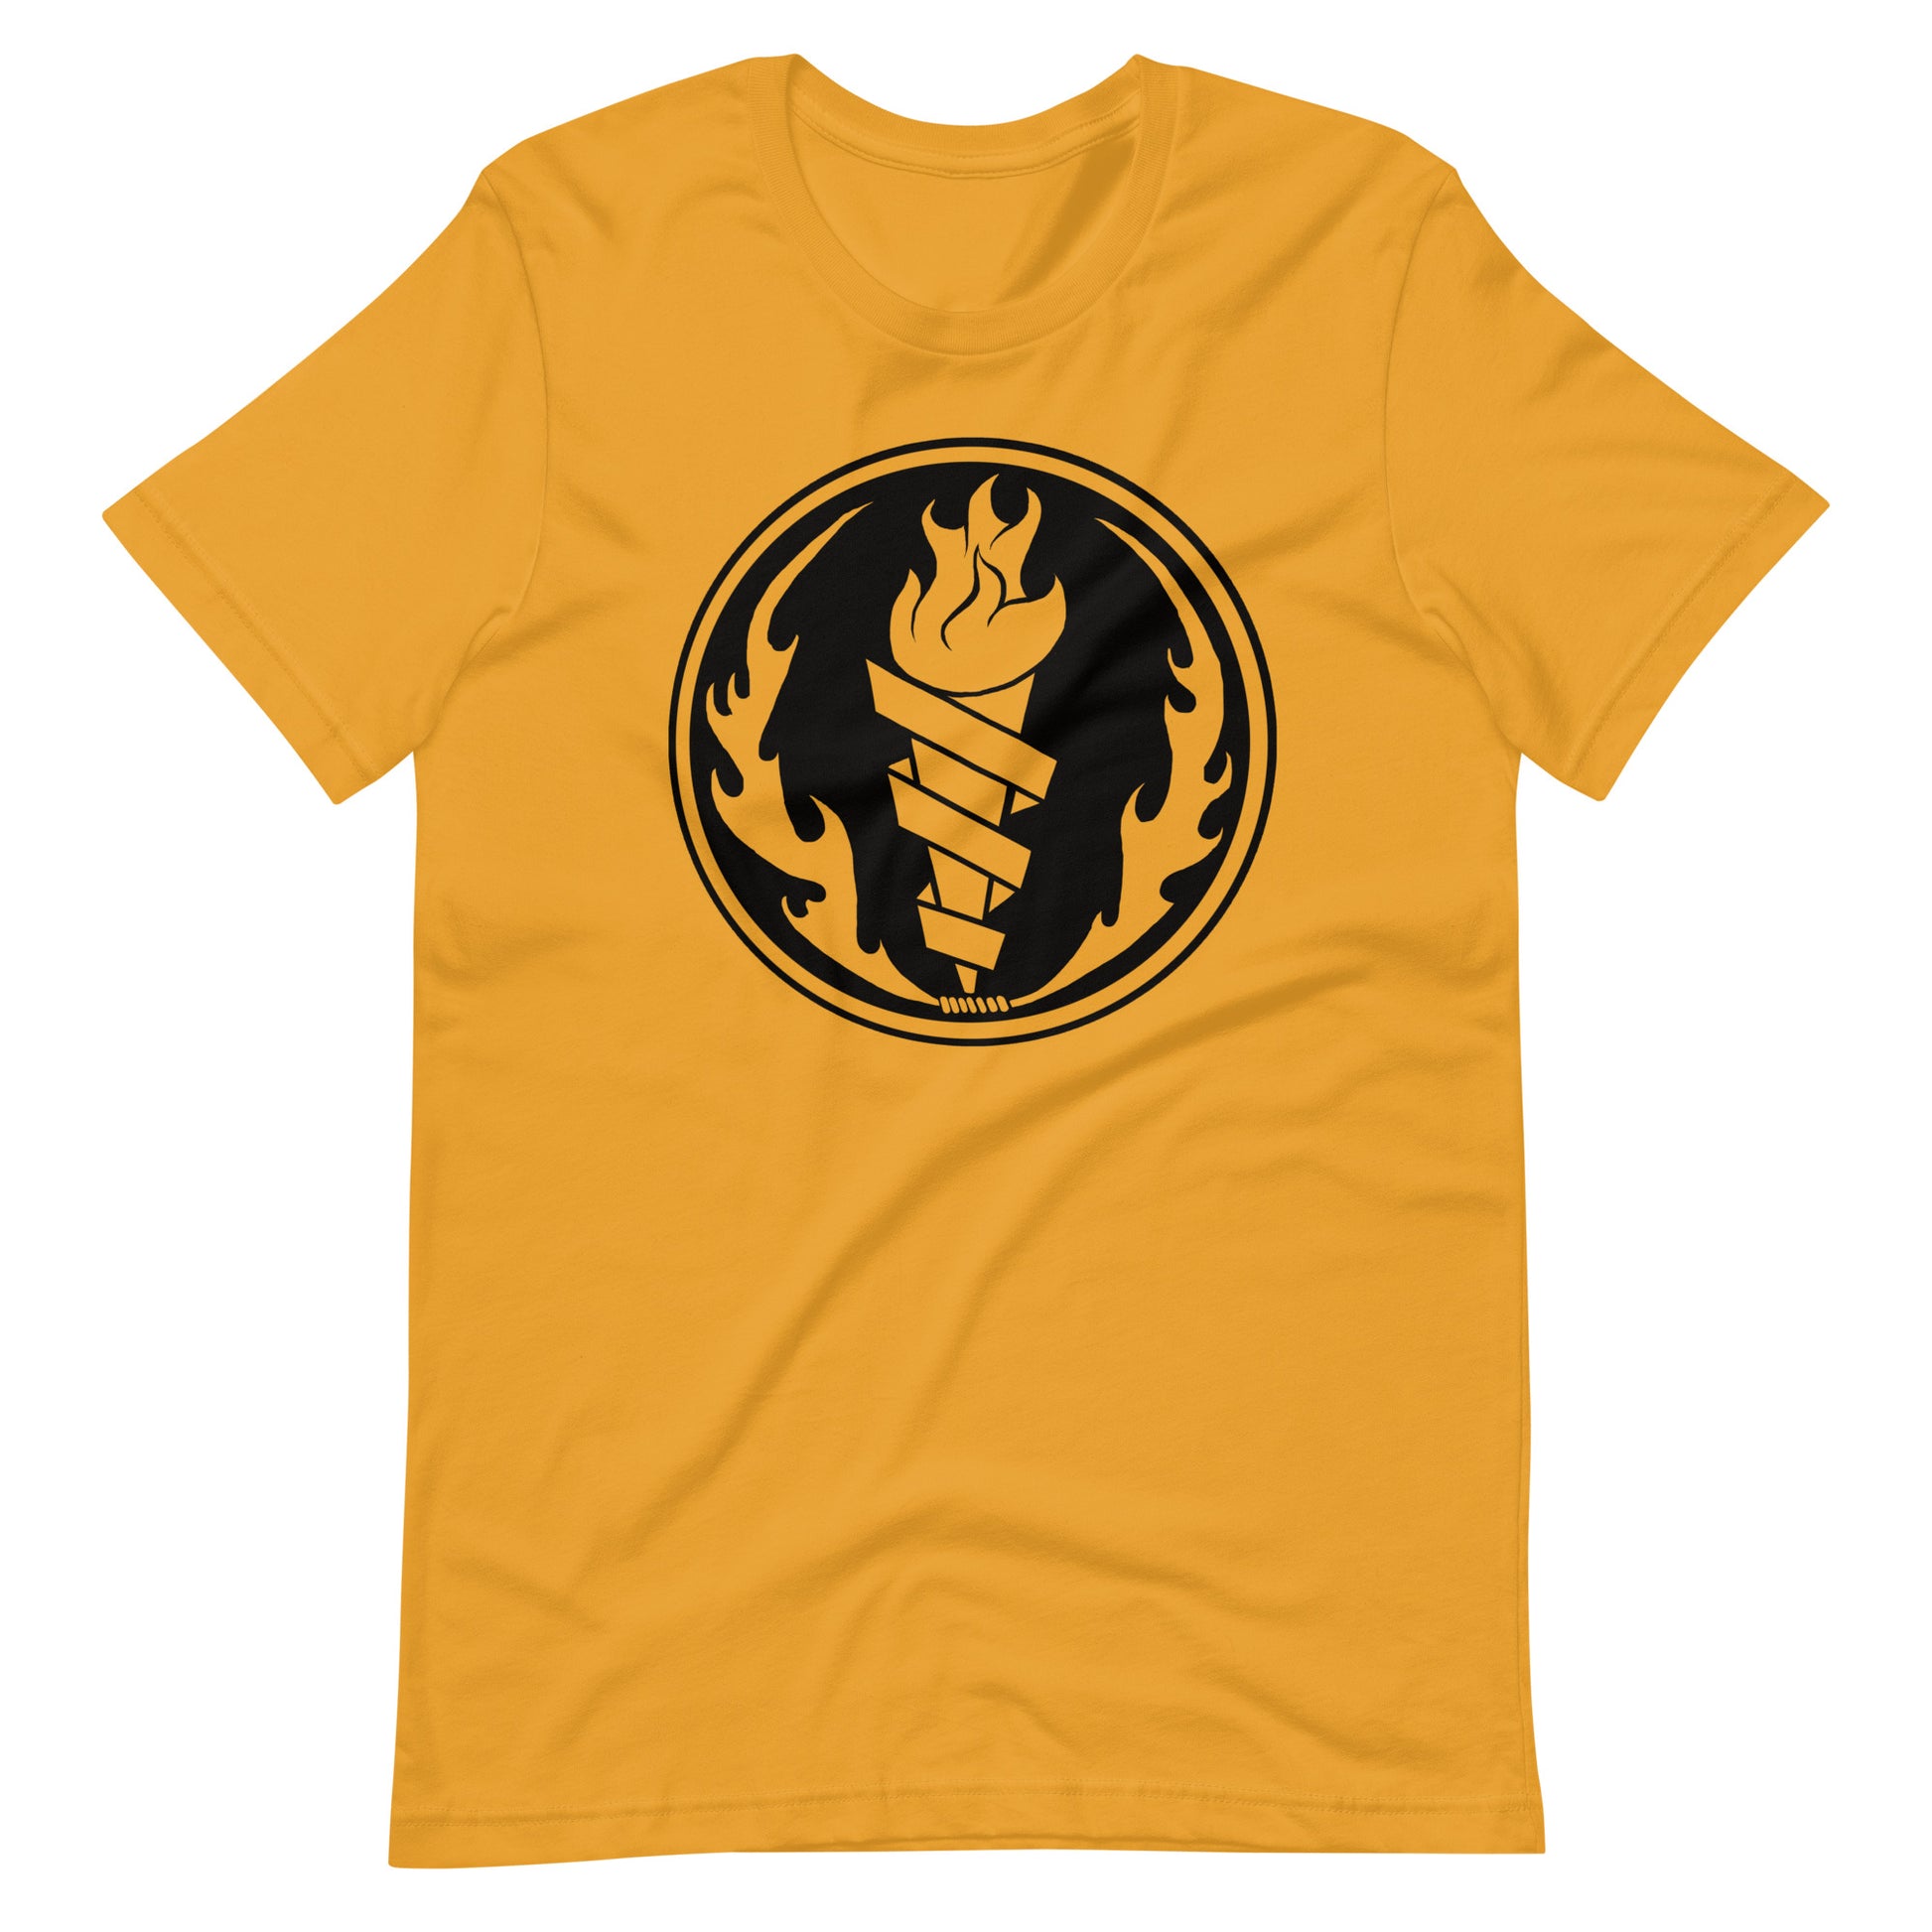 Fire Fire Black - Men's t-shirt - Mustard Front